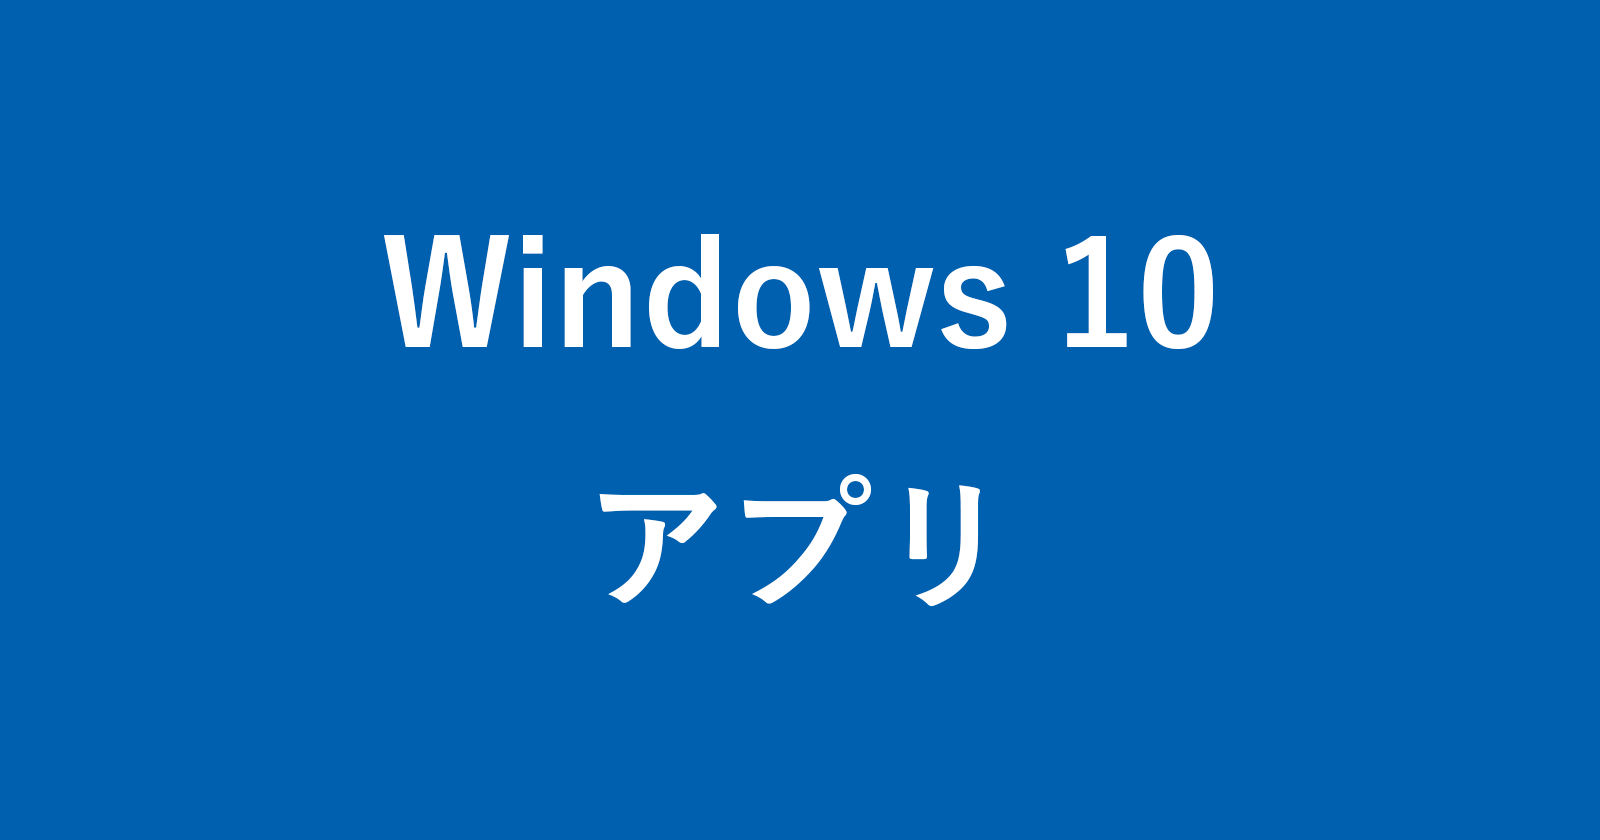 windows 10 app